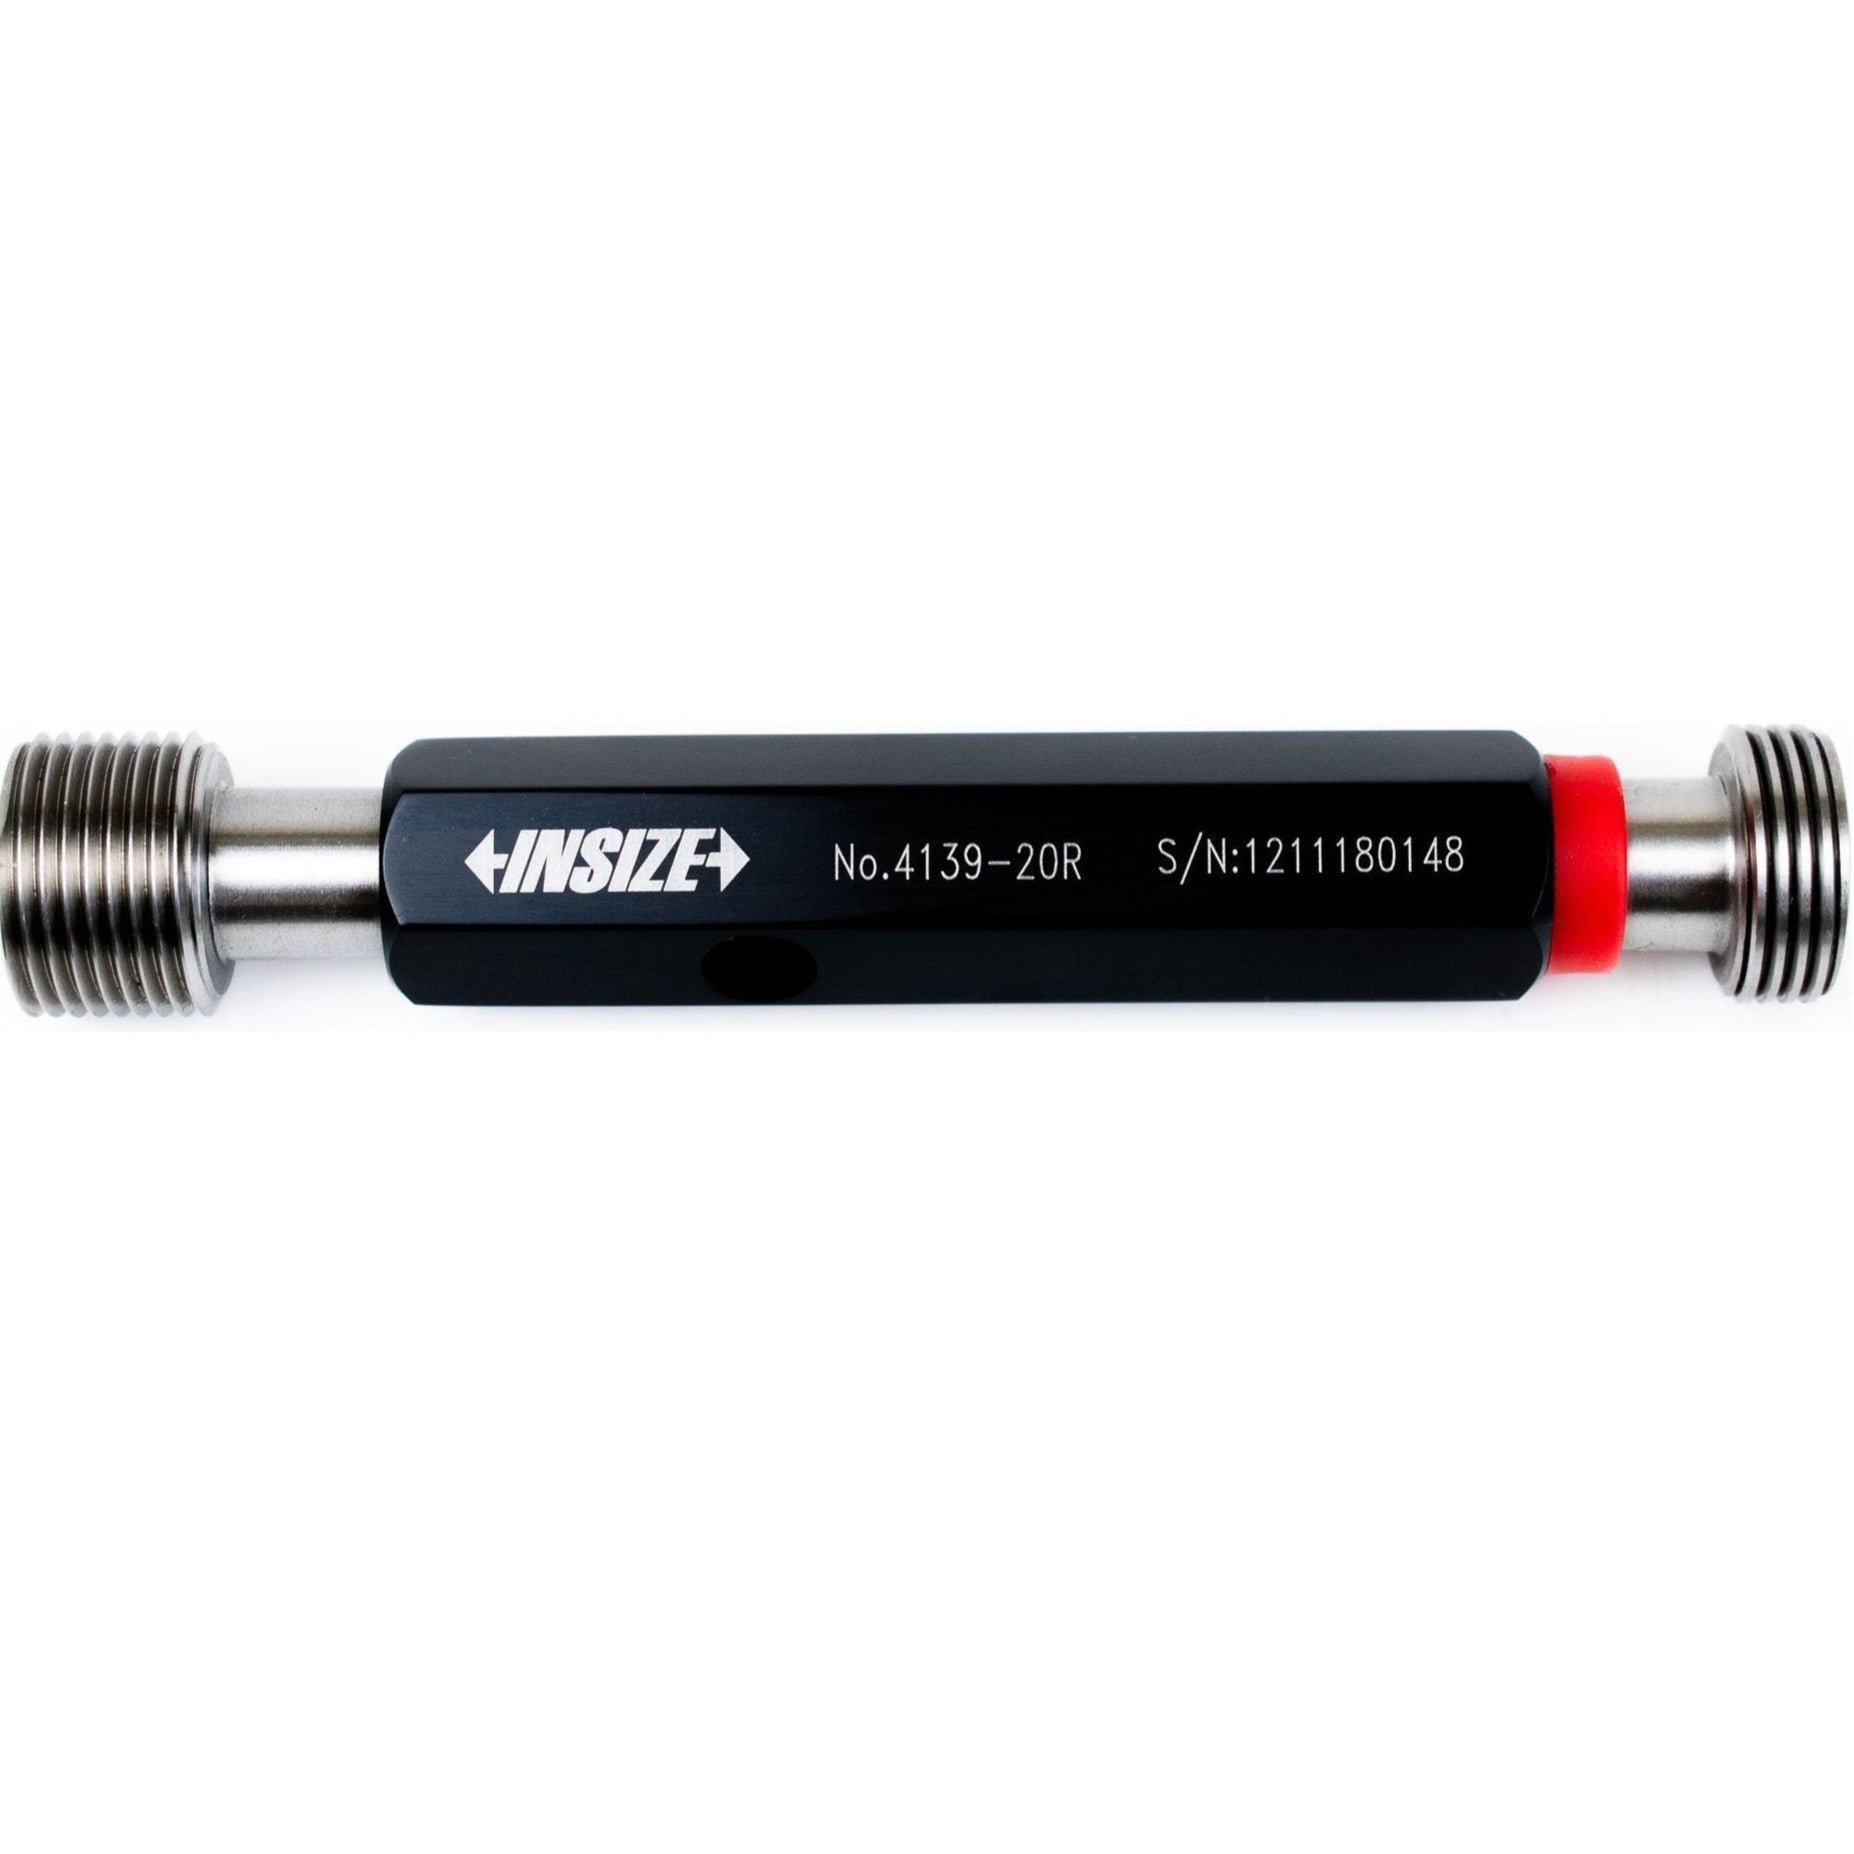 Insize Thread GO NOGO Plug Gauge M20x1.5mm  Series 4139-20R